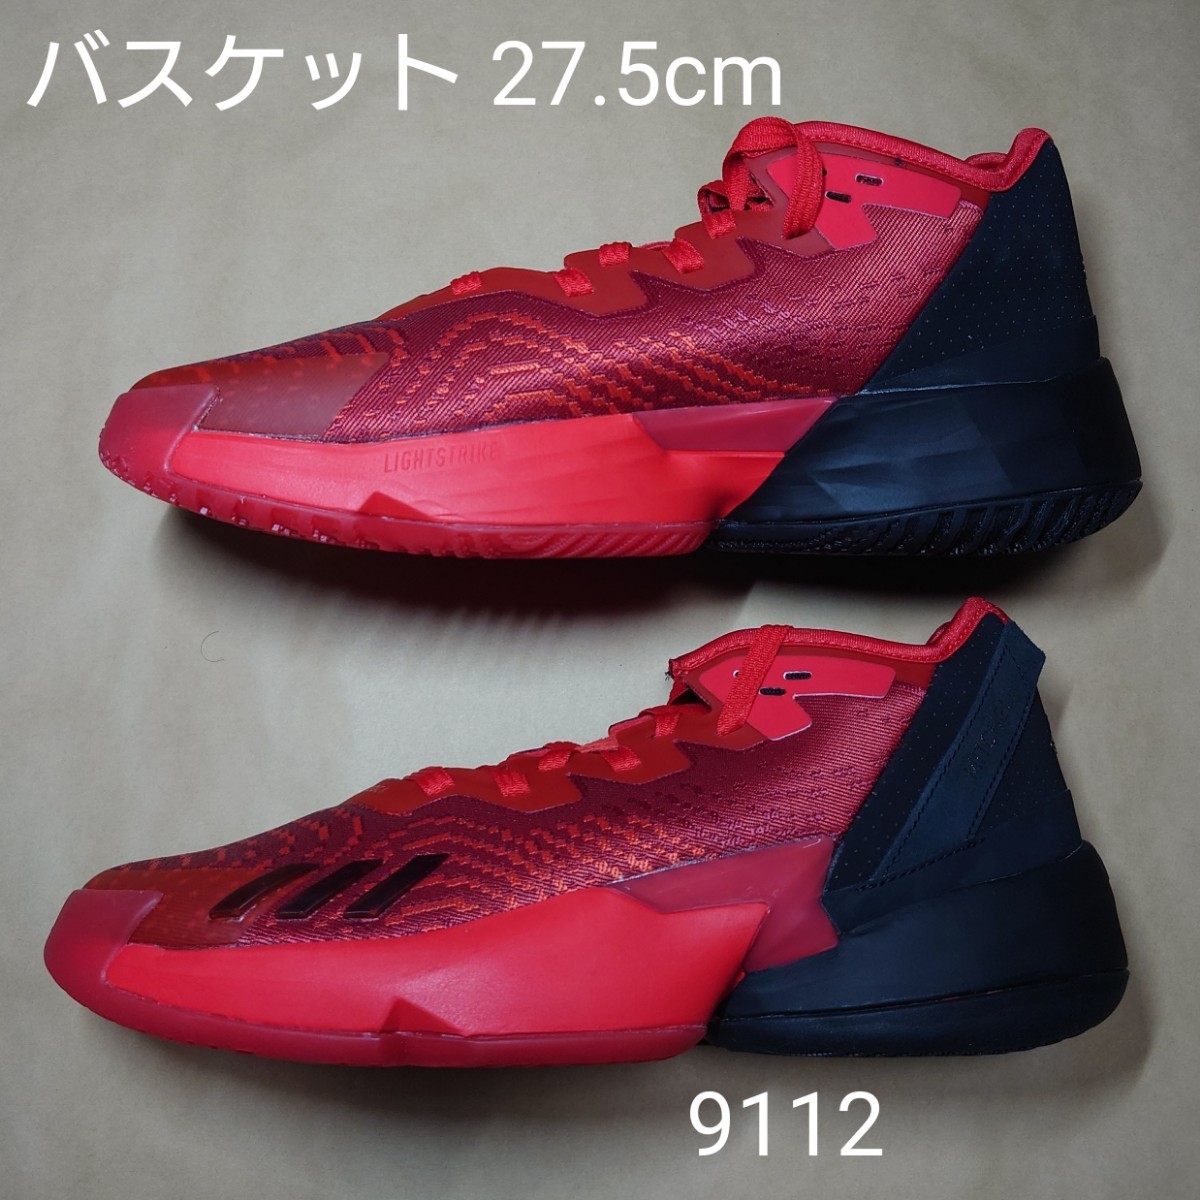 バスケットボールシューズ 27.5cm アディダス adidas D.O.N. Issue 4 9112